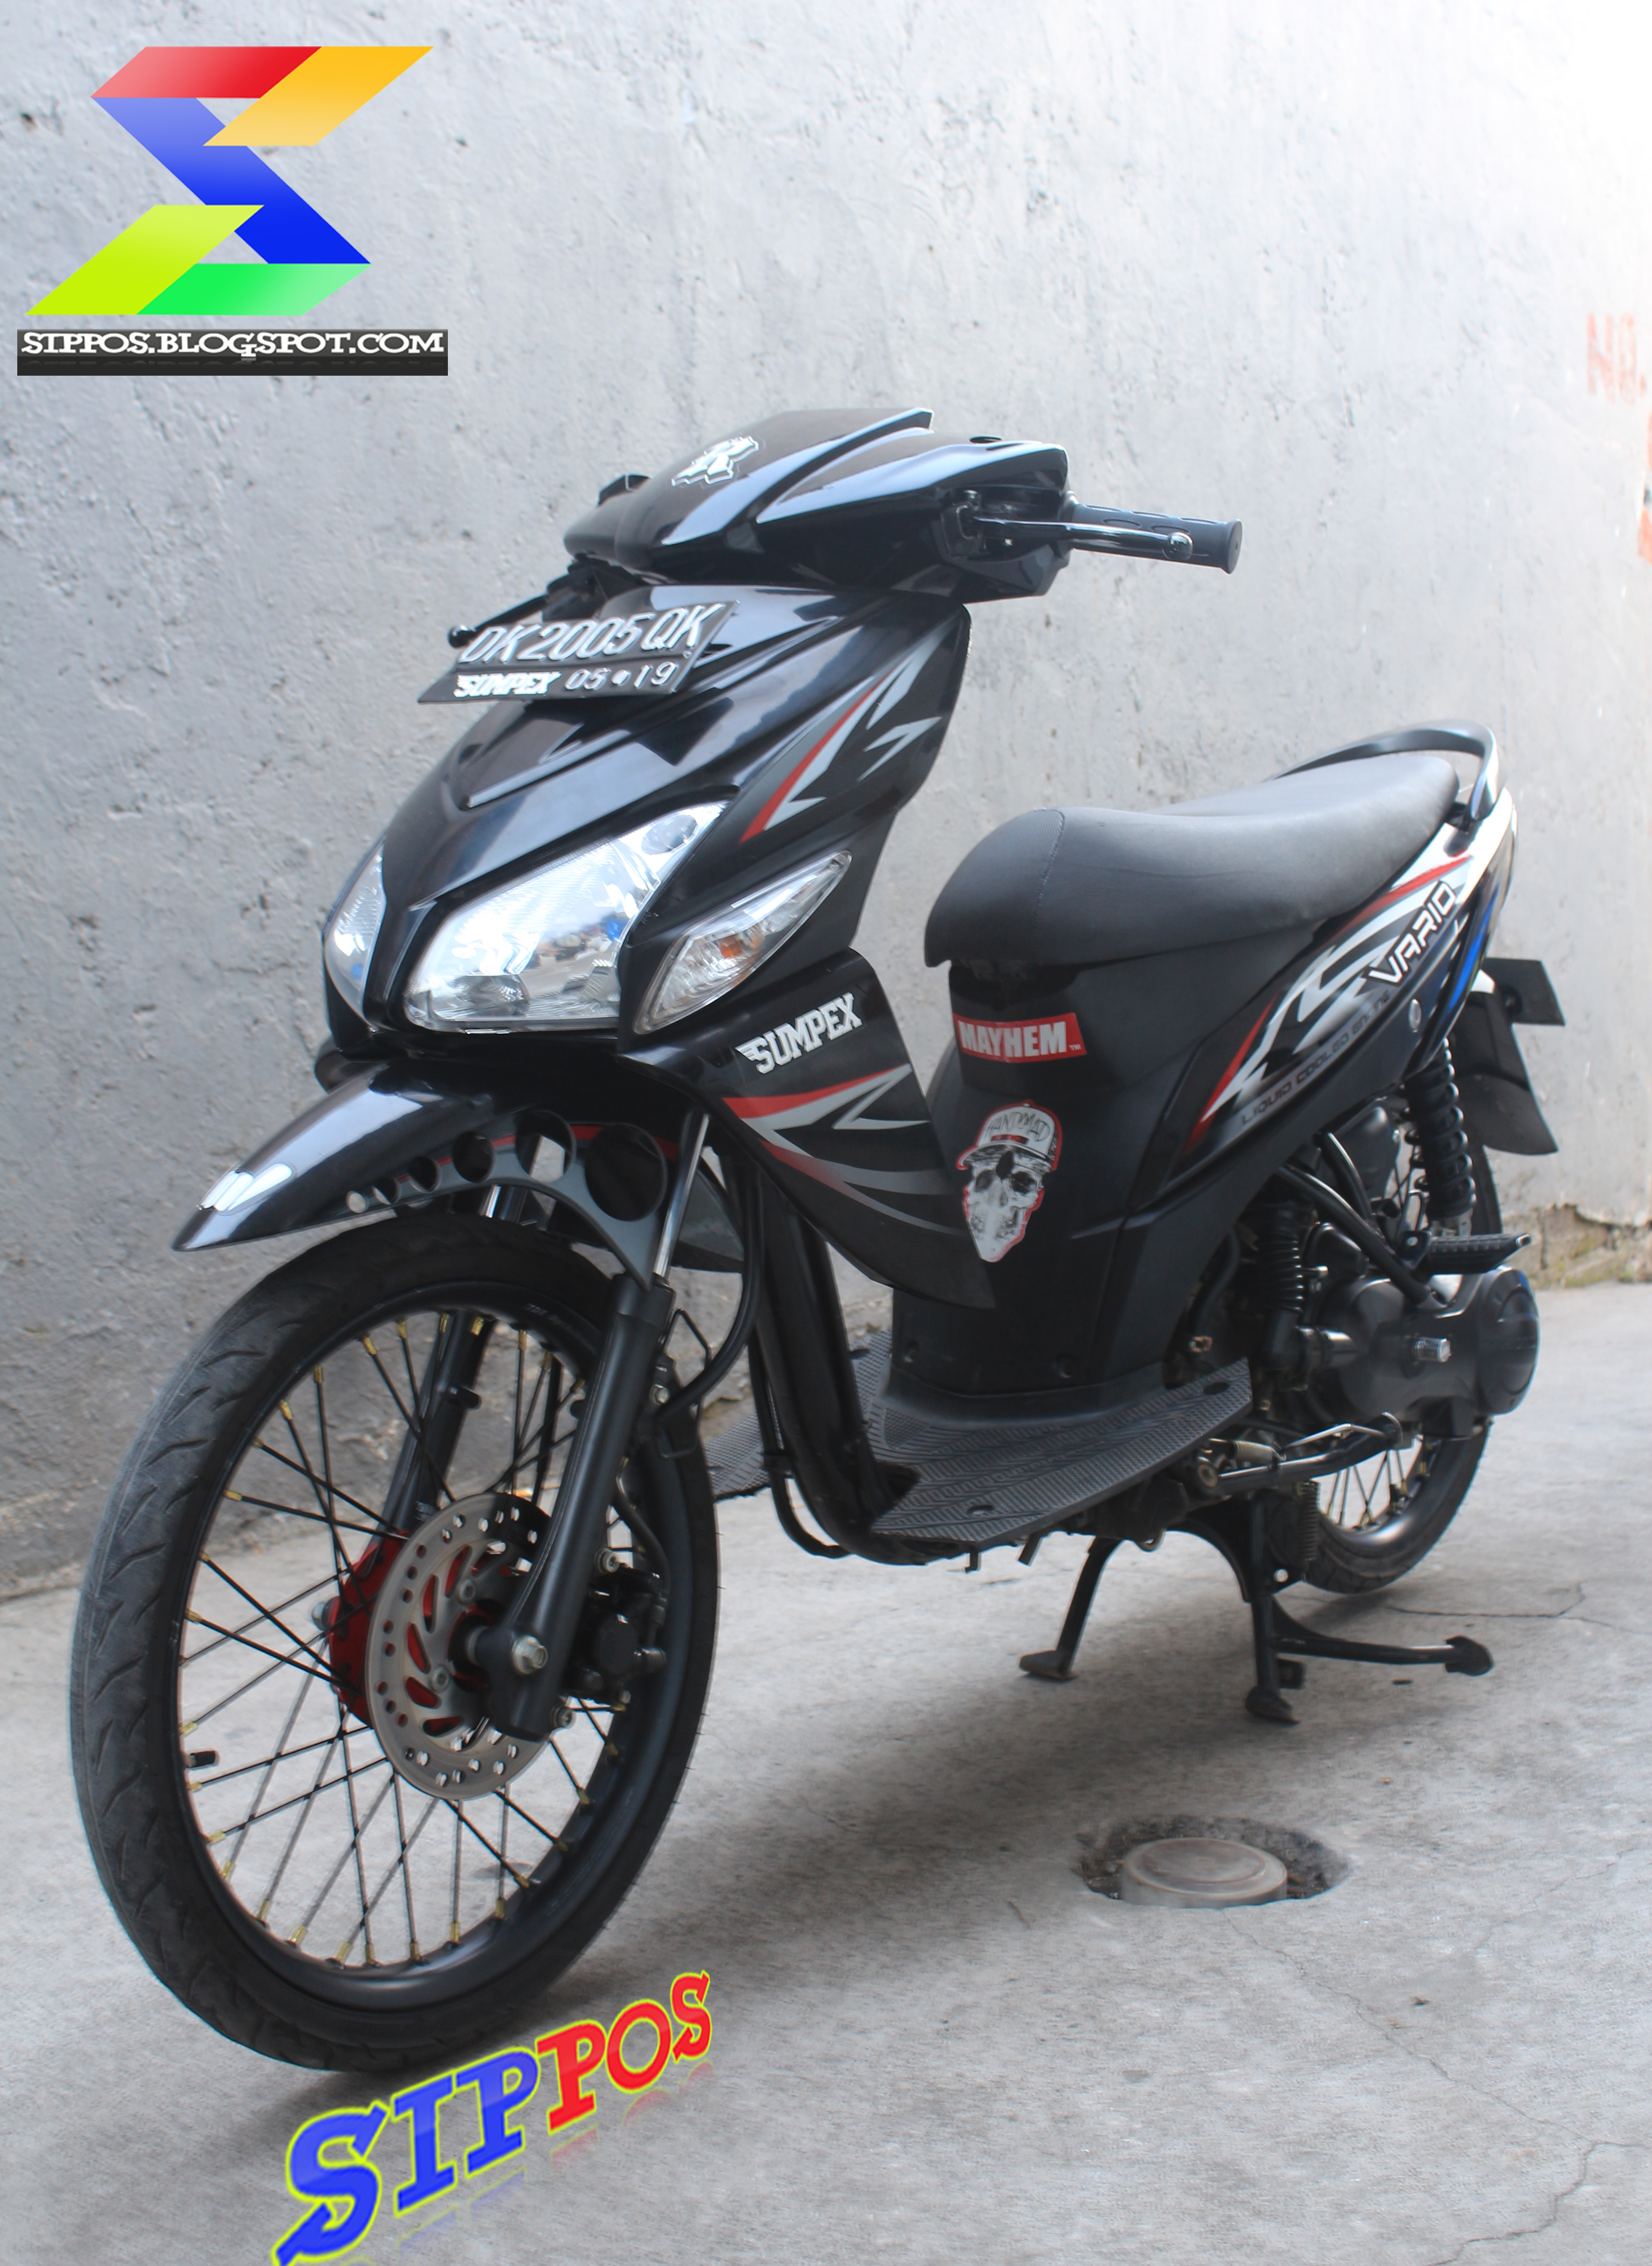 Modifikasi Honda Vario CW Terbaru 2015 Simple Dan Keren Bahrul3851